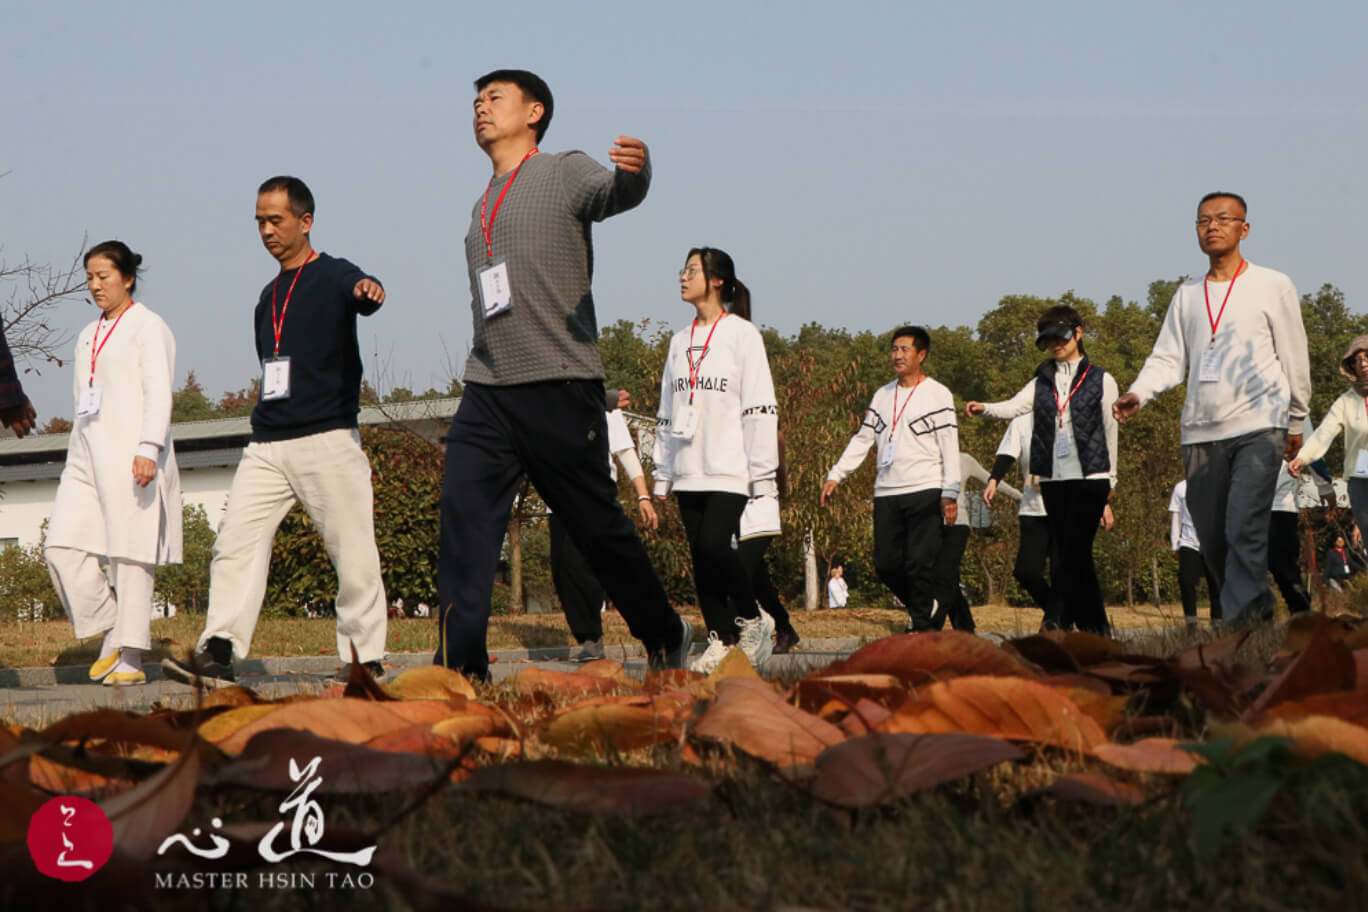 3-Day Meditation in Yangzhou – Chan for Realization, Luminous as the Sun-MasterHsinTao